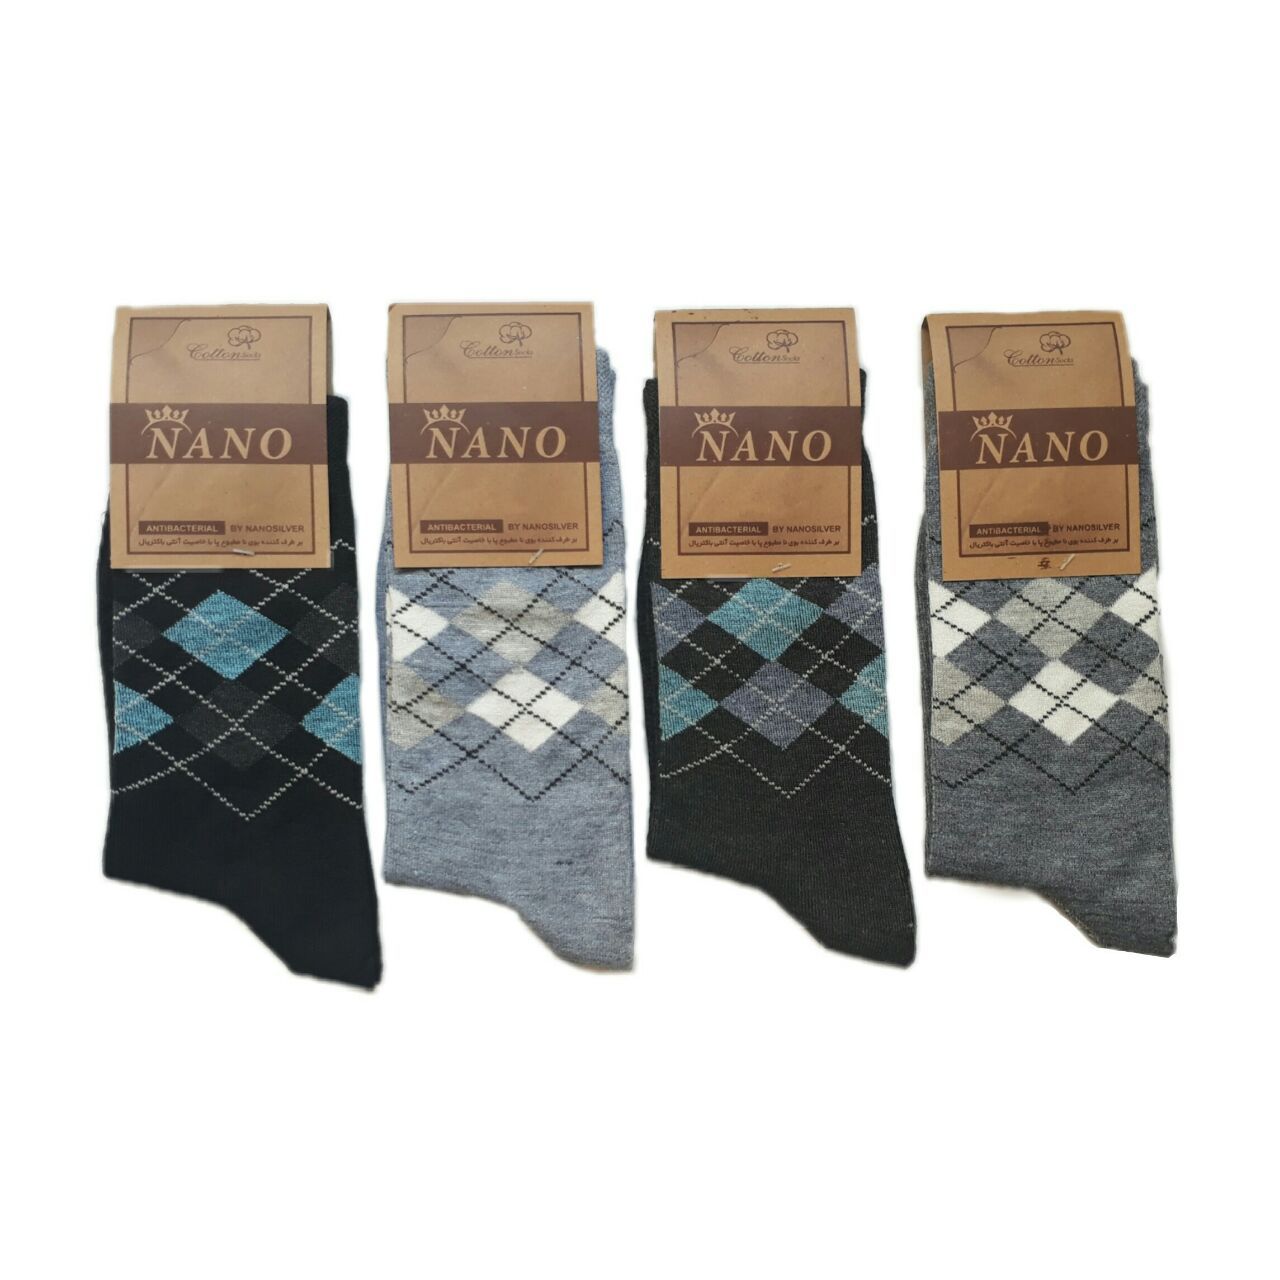 جوراب مردانه مدل Nano مجموعه 4 عددی -  - 1